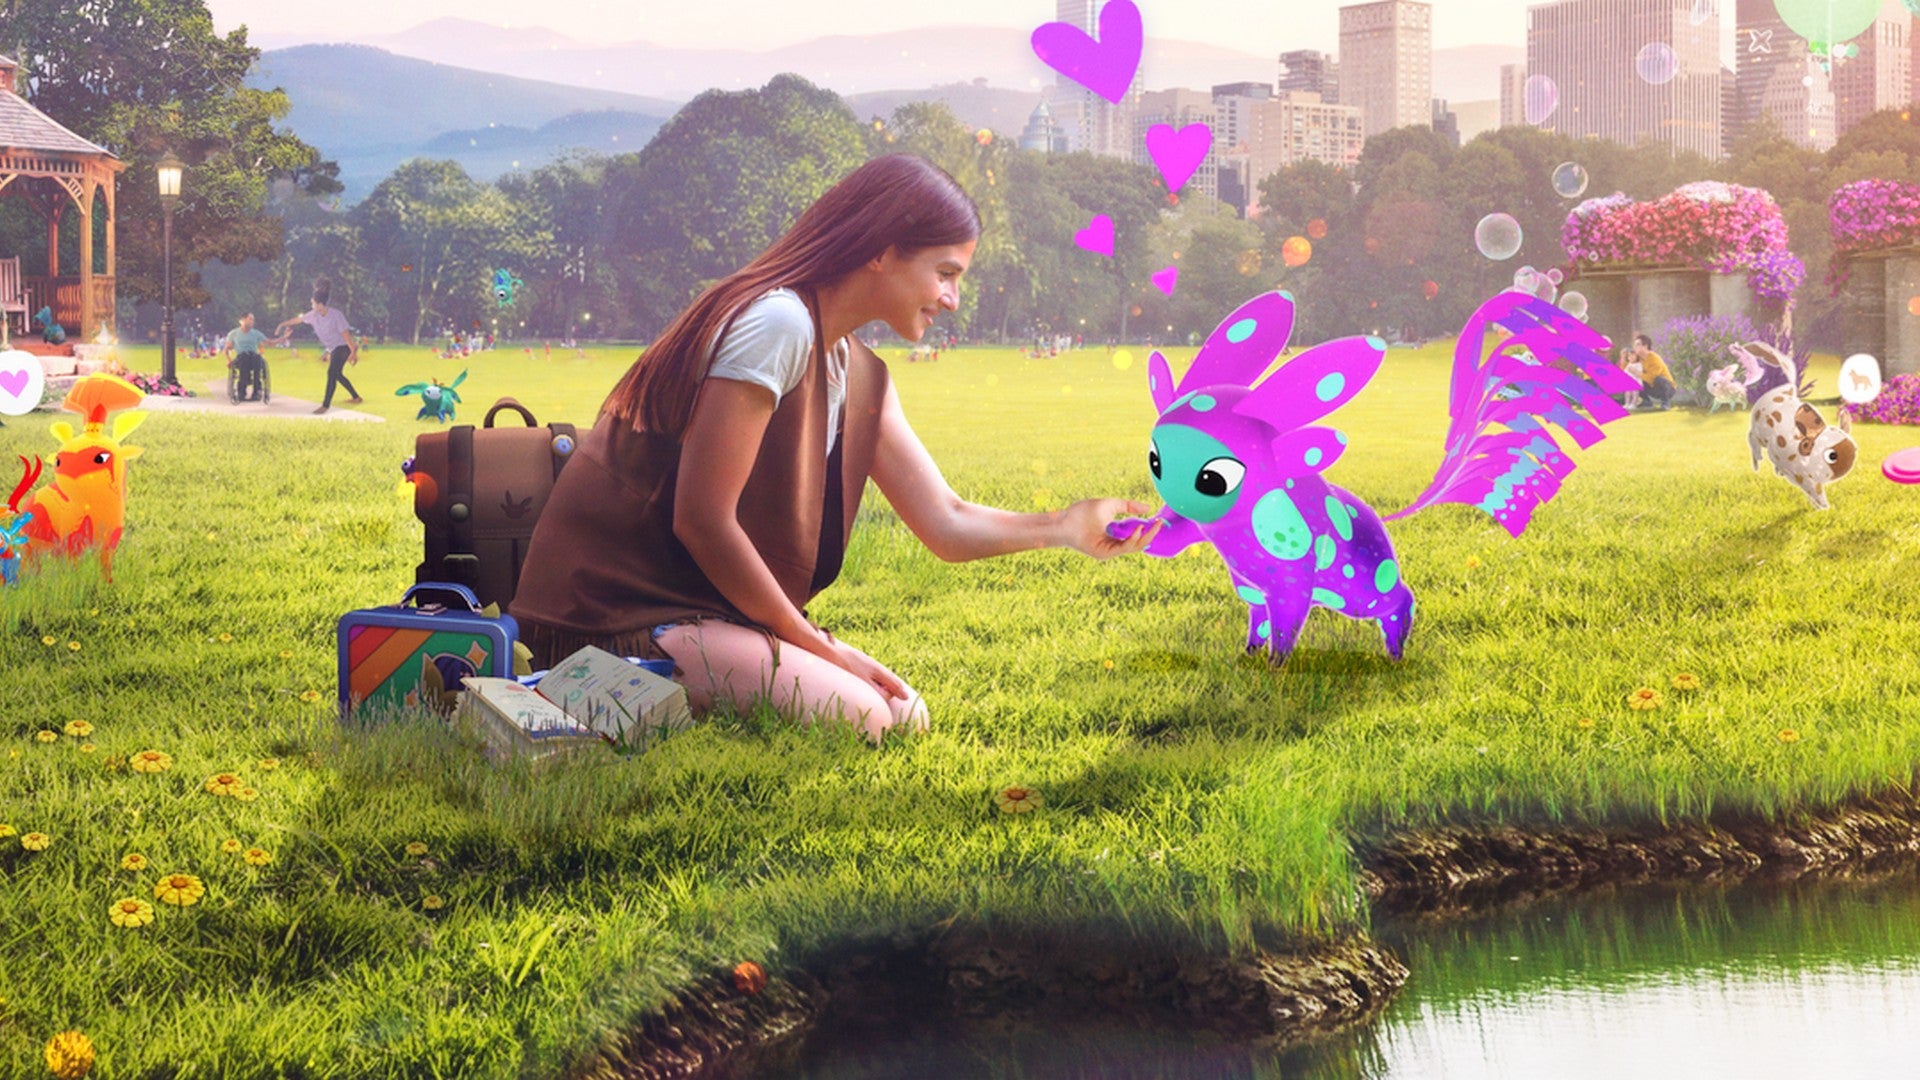 Bilder zu Peridot: Niantics neues Spiel bietet das, was Pokémon Go noch fehlt